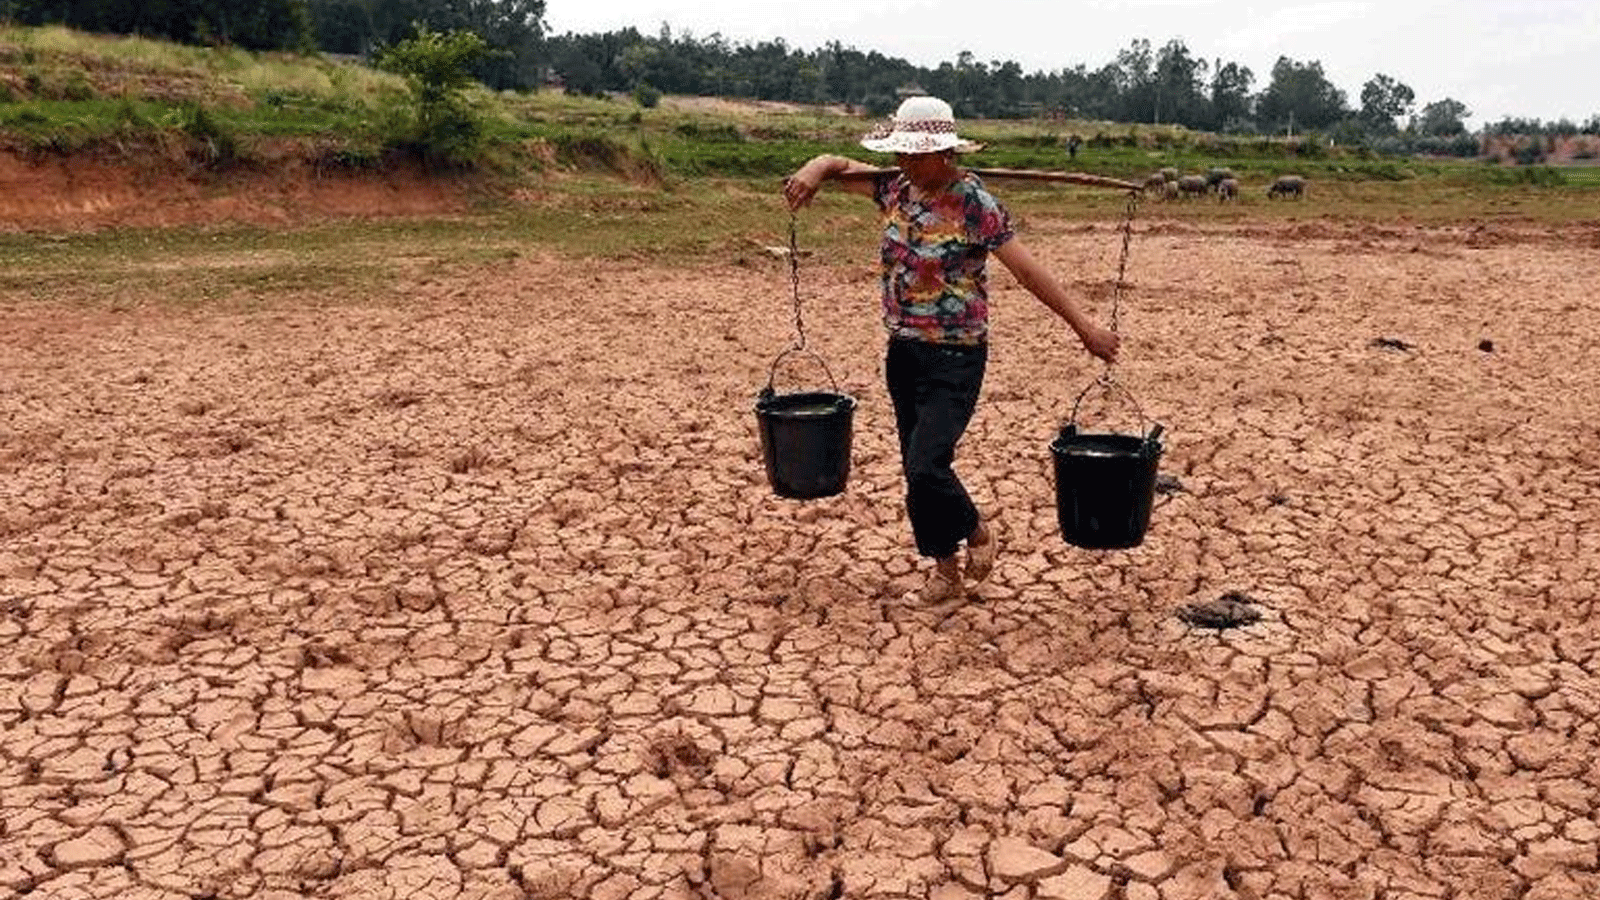 مزارع يحمل المياه في حقل جاف في بلدة شينتشياو، في مقاطعة يوننان جنوب غربي الصين، 8 يوليو\ تموز 2015(XINHUA)